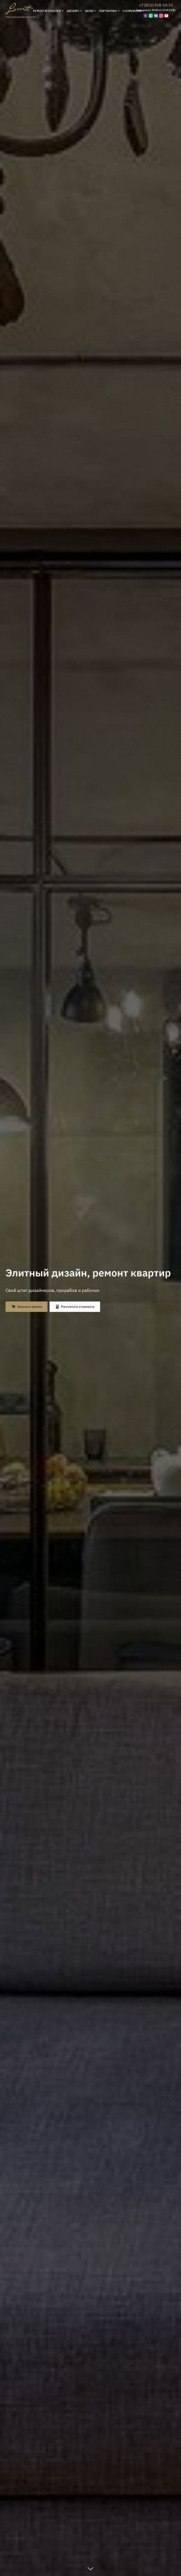 Предпросмотр для www.luxorta.ru — Luxorta